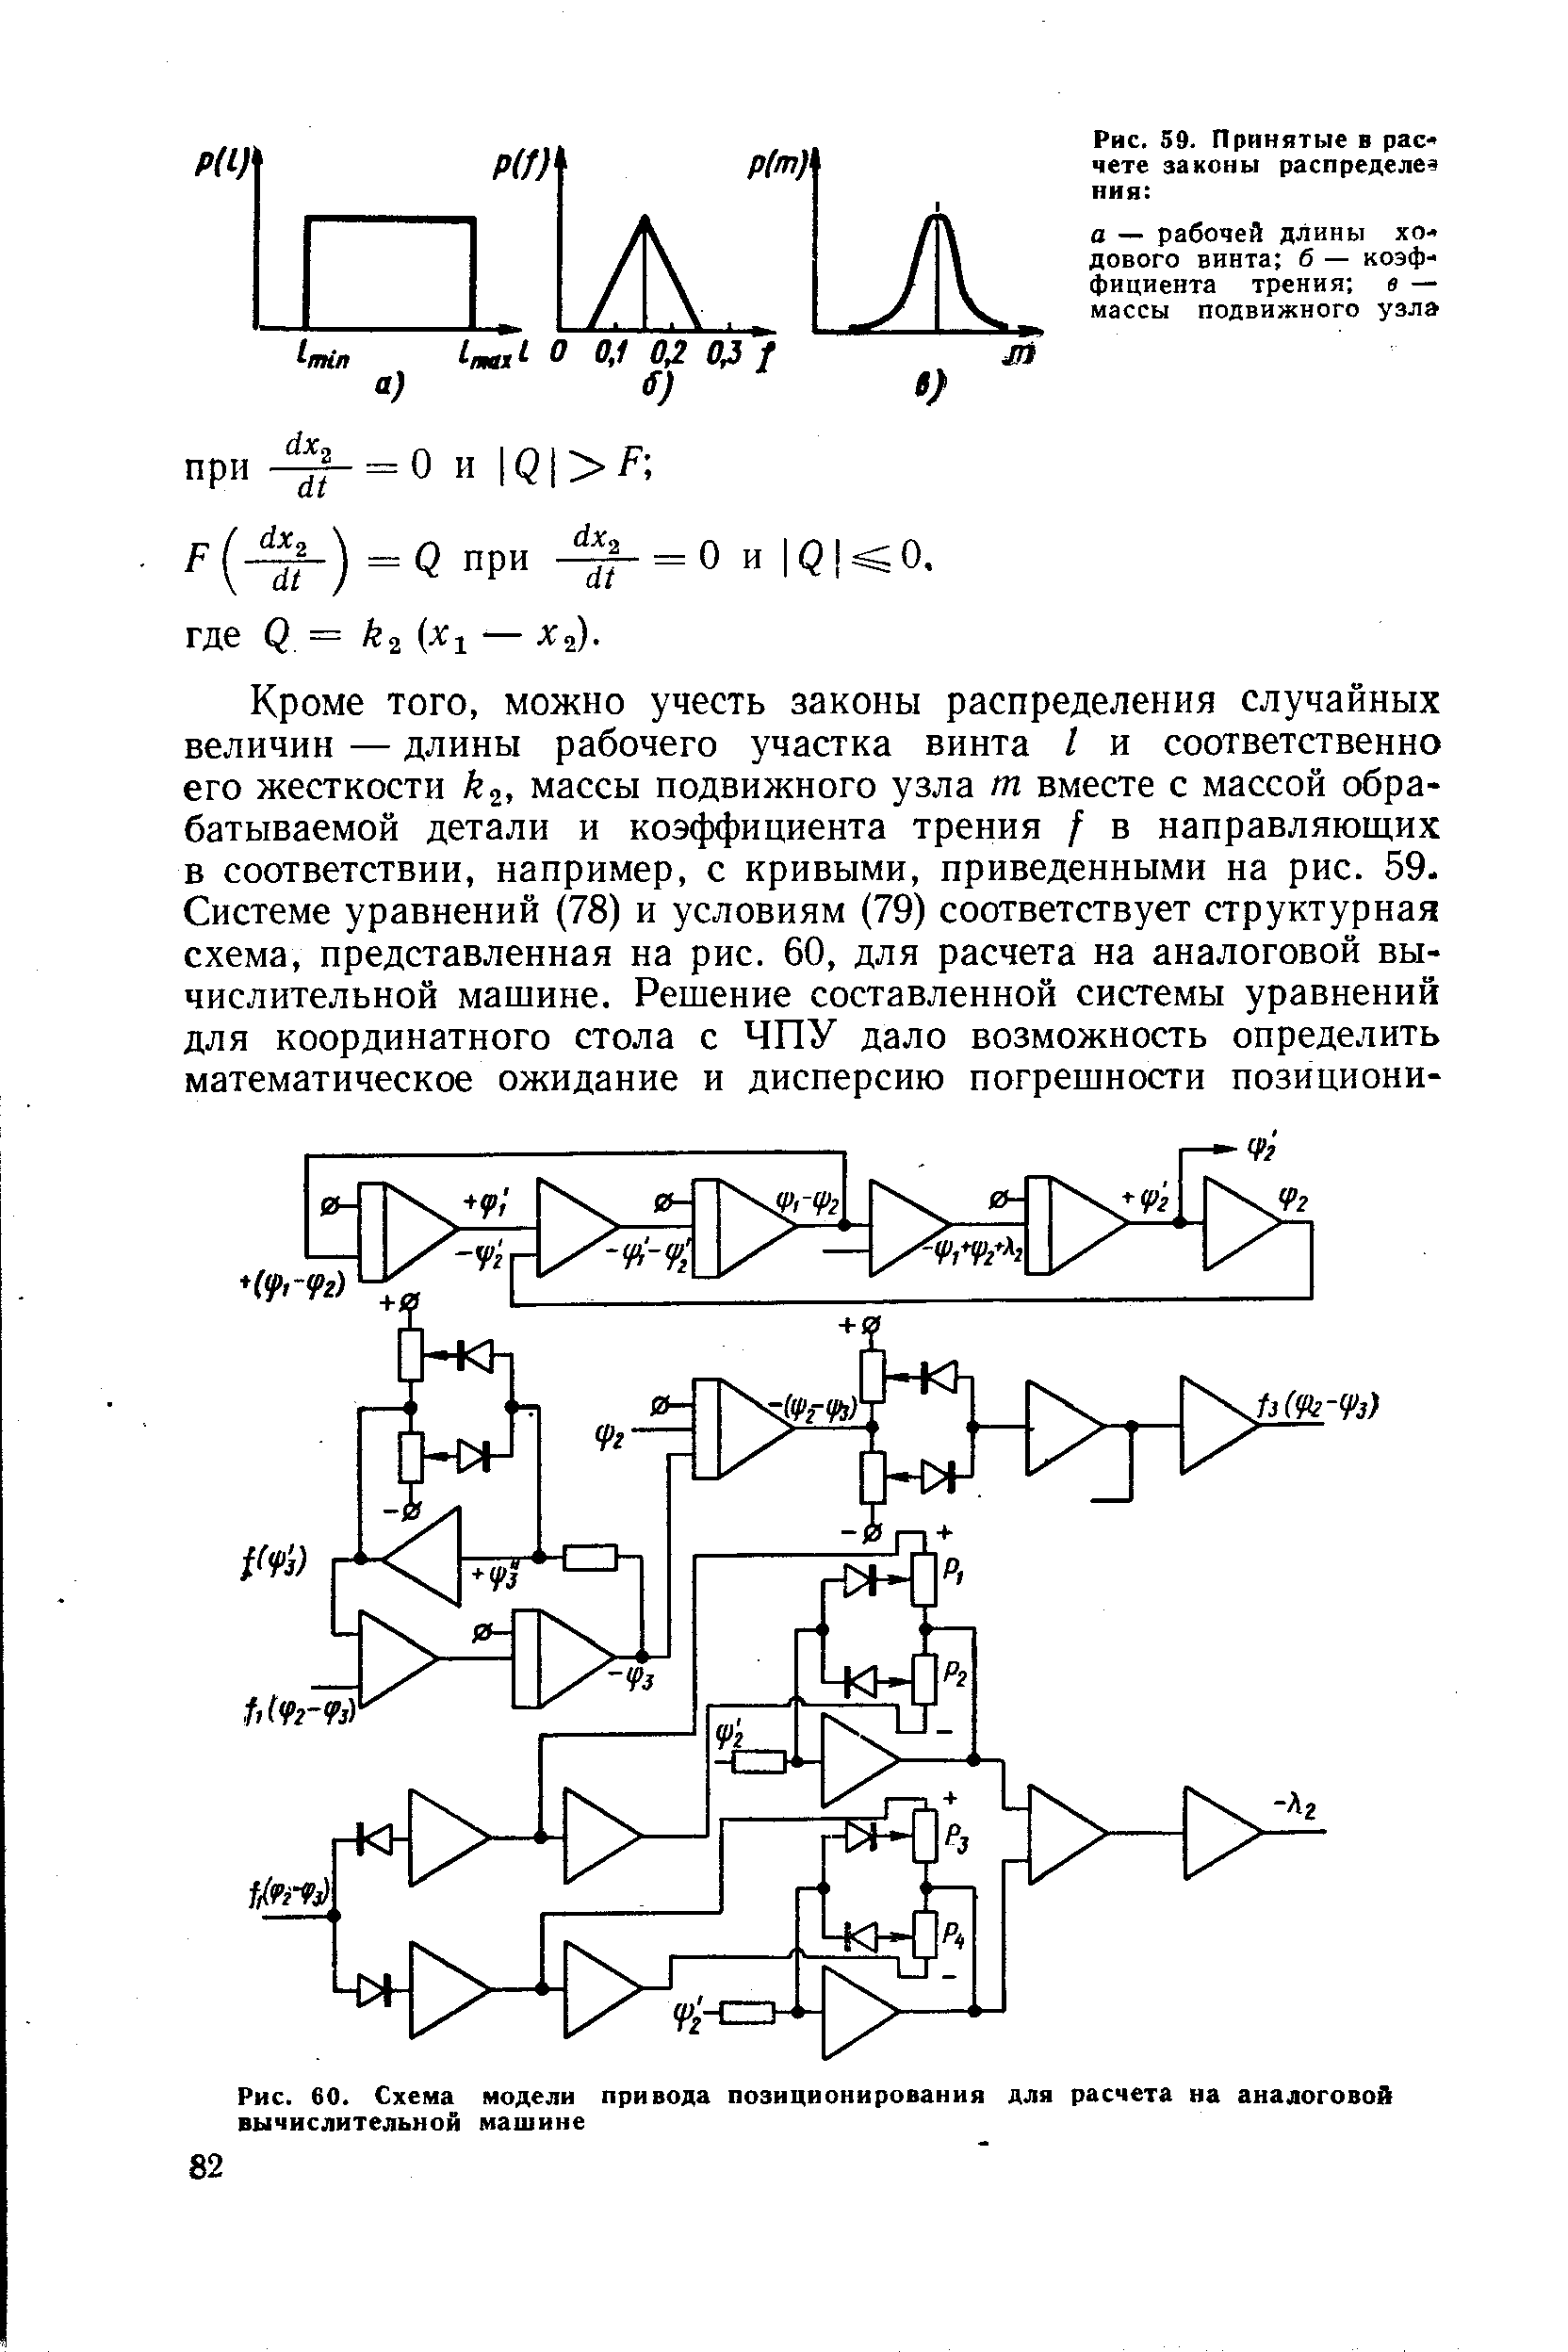 Рис. 60. <a href="/info/23457">Схема модели</a> привода позиционирования для расчета на аналоговой вычислительной машине
